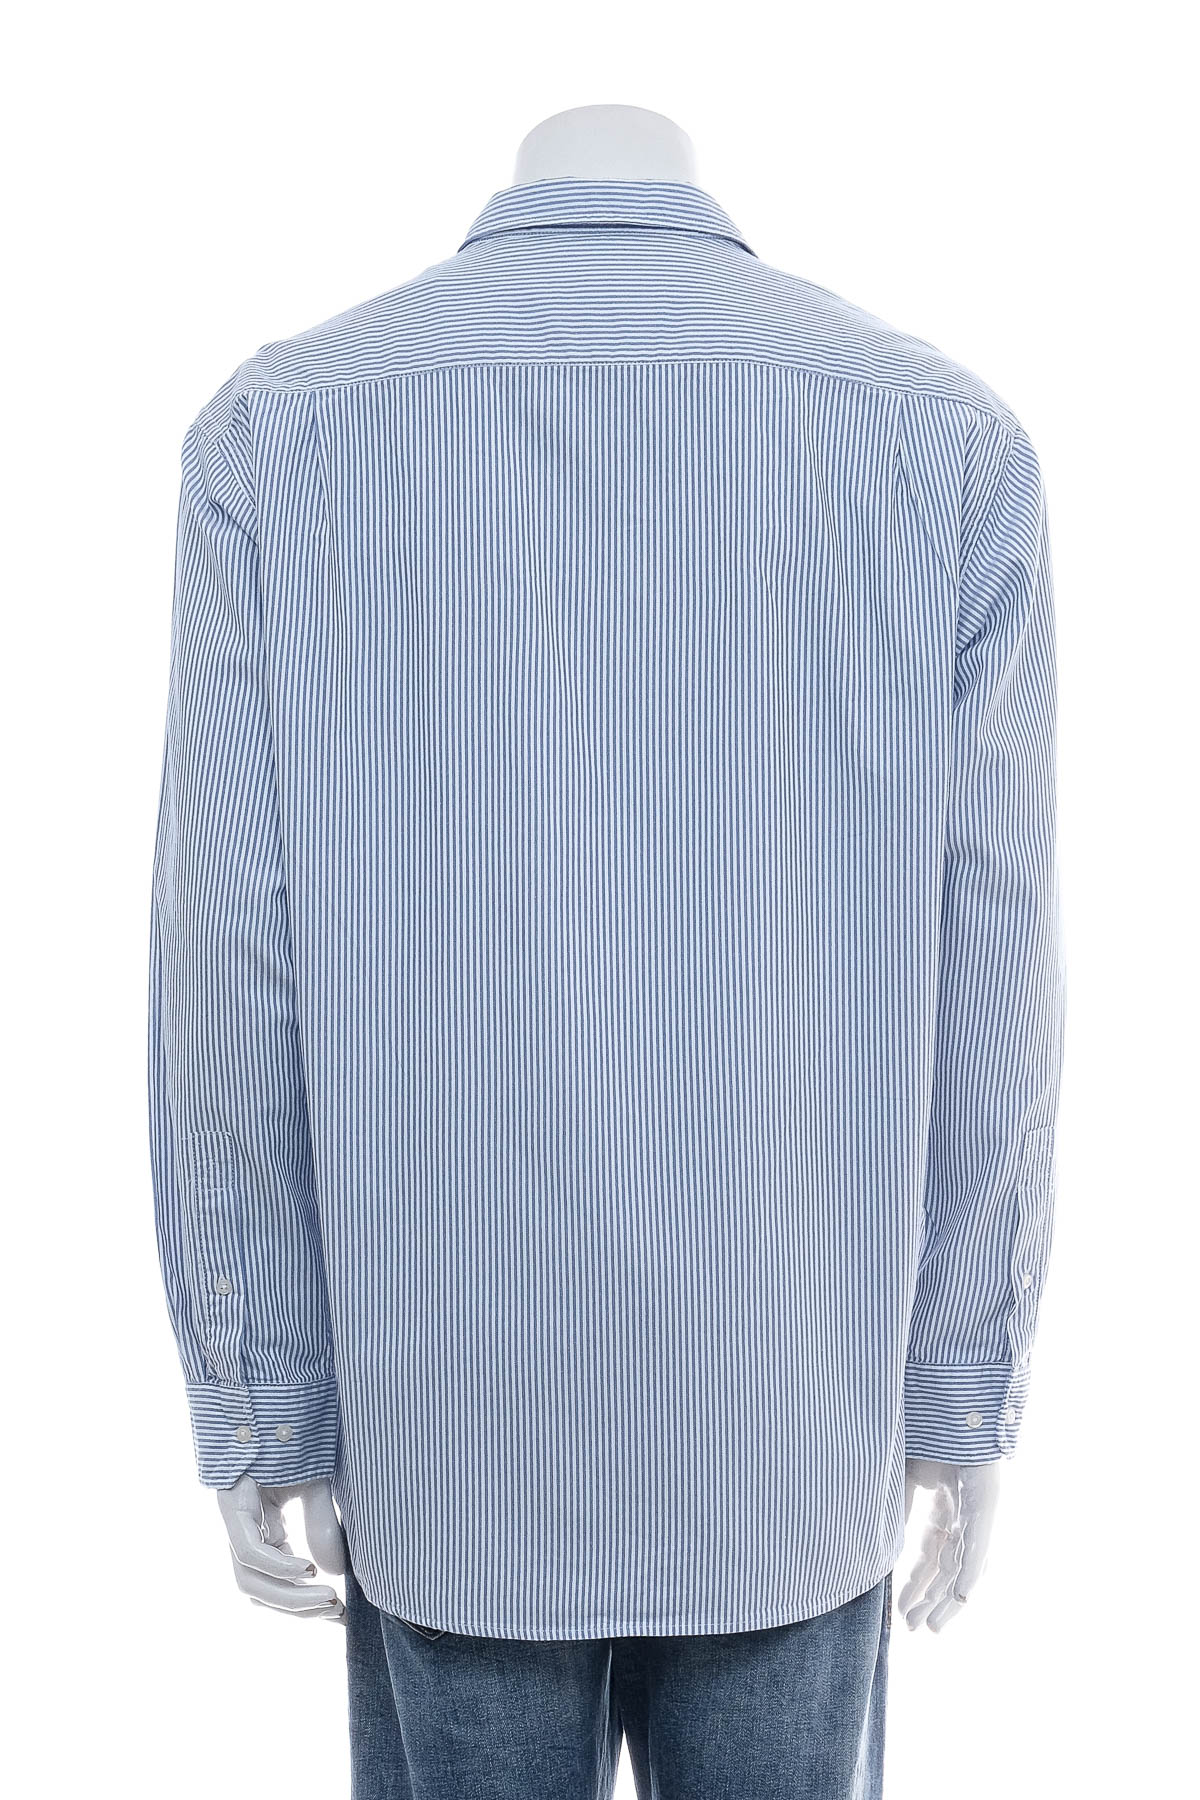 Ανδρικό πουκάμισο - my blue by Tchibo - 1